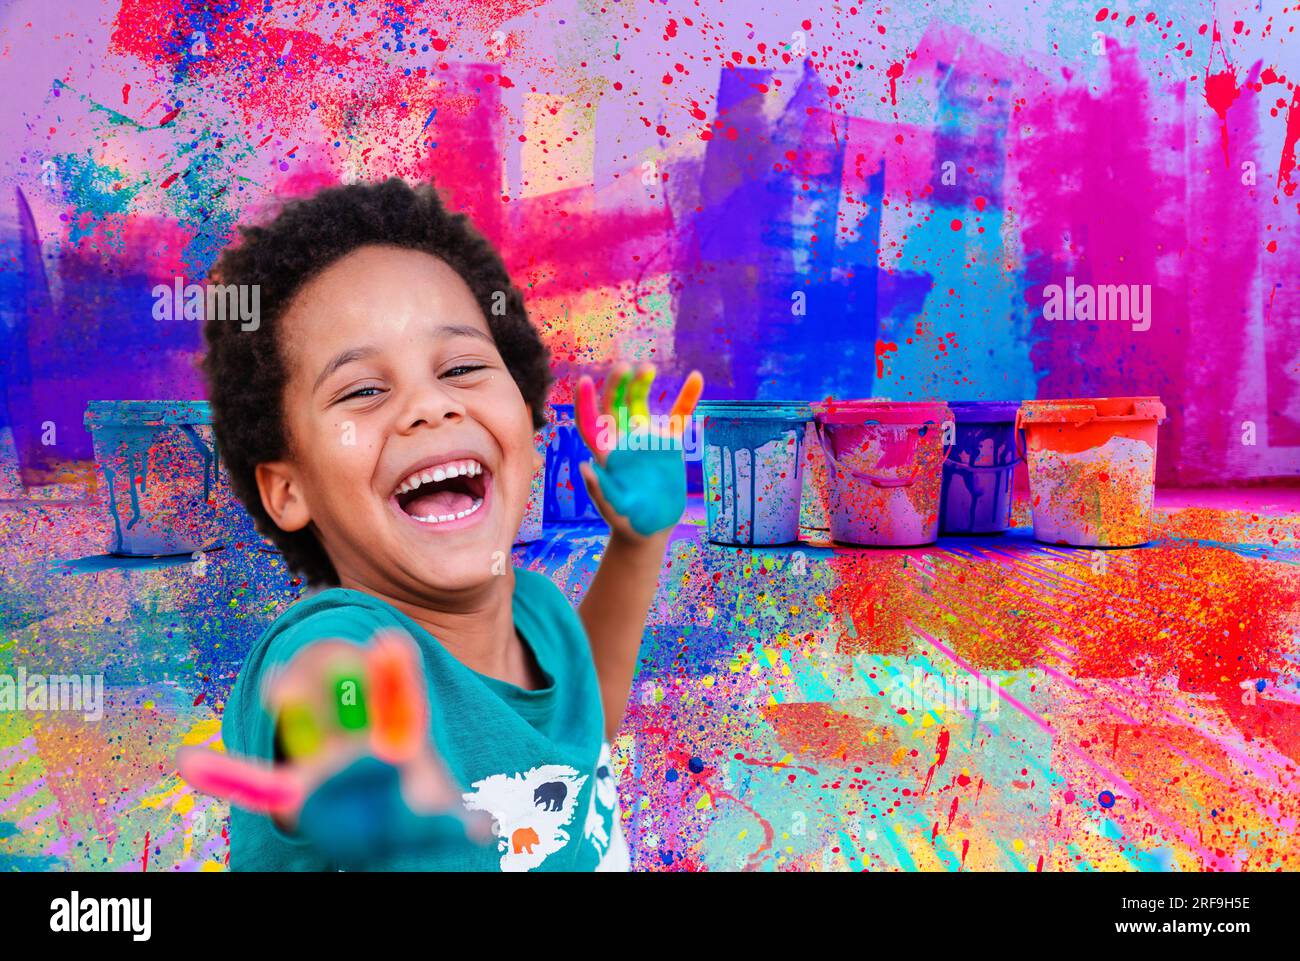 A Los Niños Juegos Infantiles De Colores. Fotos, retratos, imágenes y  fotografía de archivo libres de derecho. Image 46854224